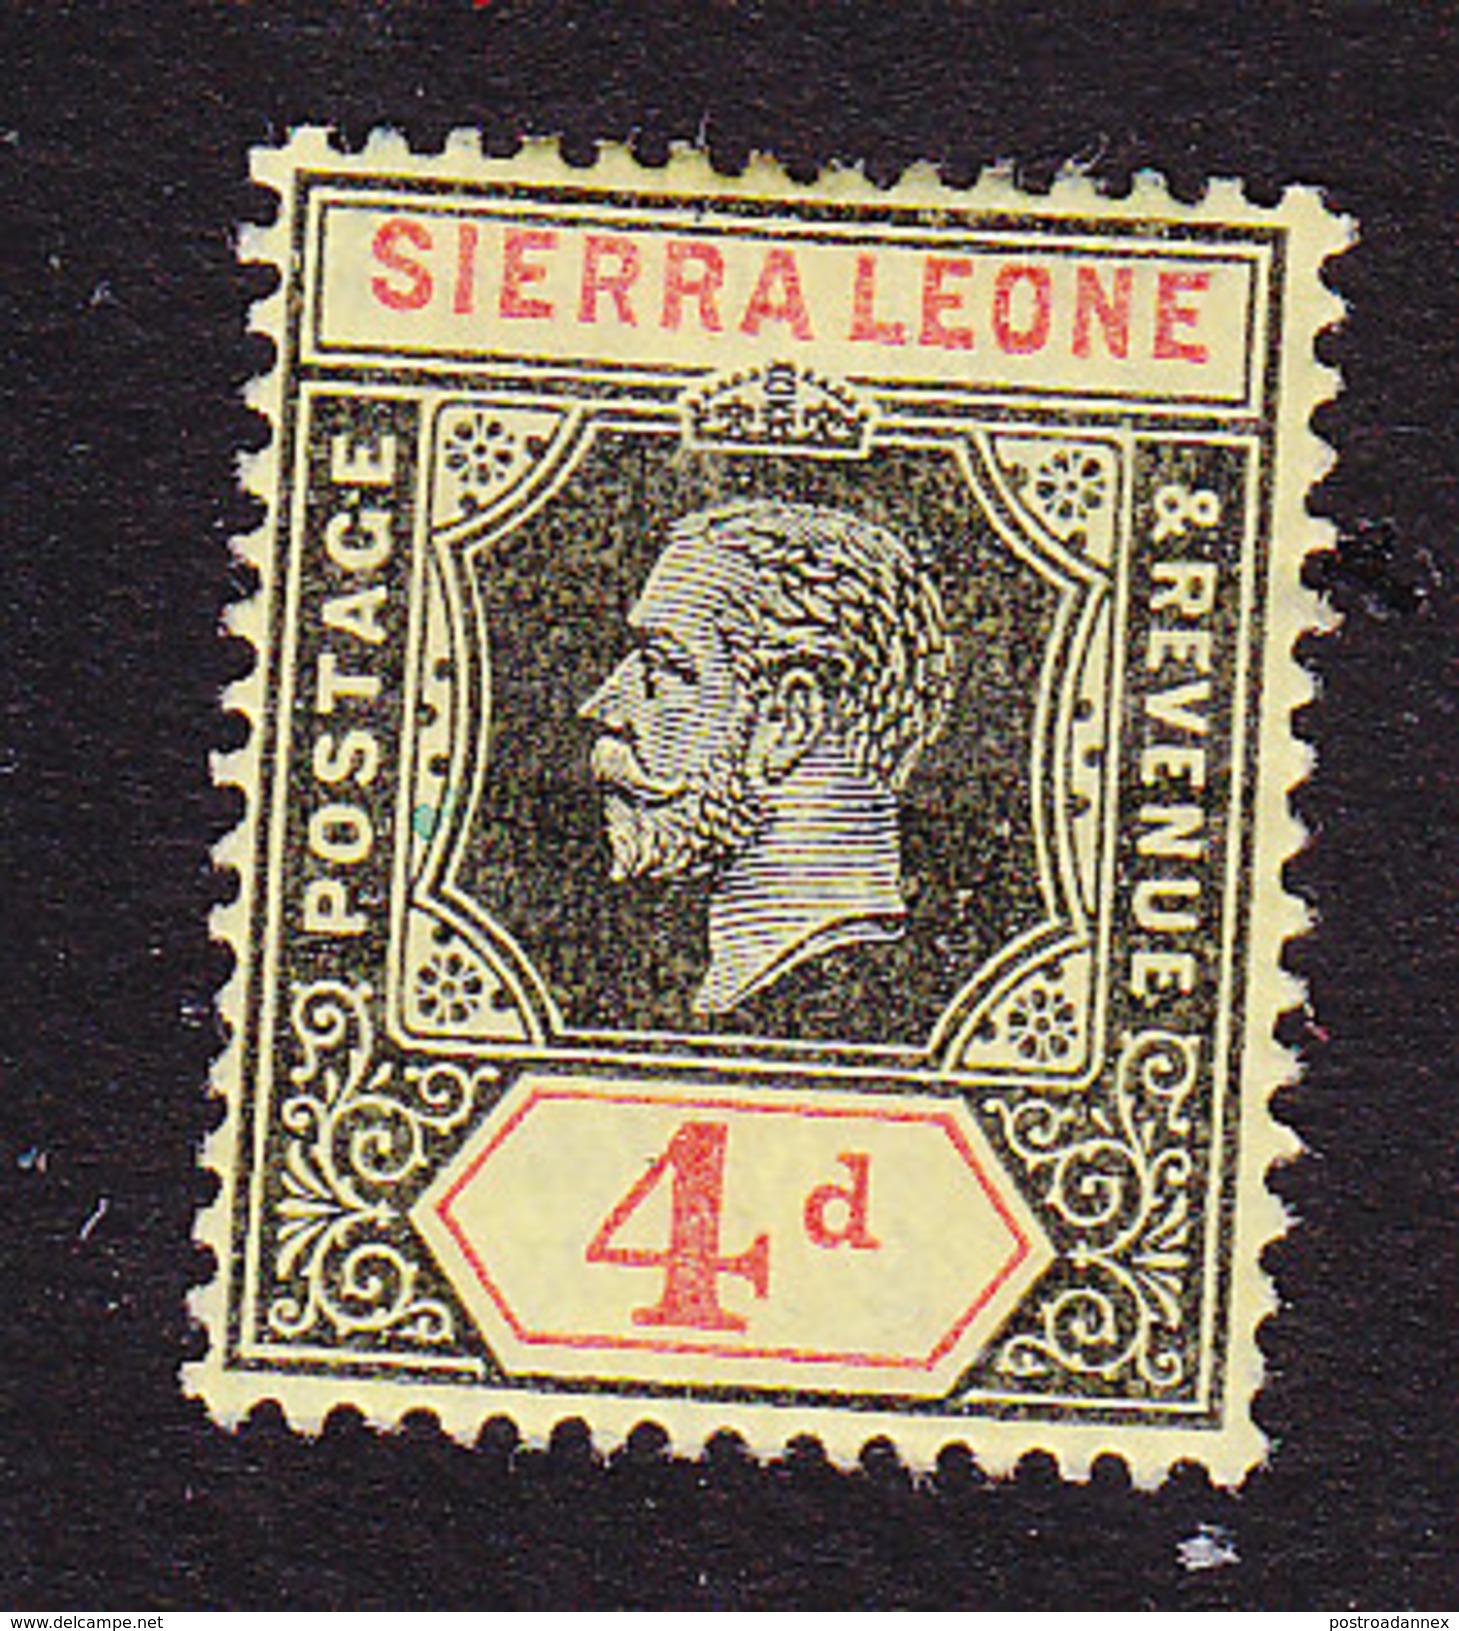 Sierra Leone, Scott #109, Mint Hinged, King George V, Issued 1912 - Sierra Leone (...-1960)